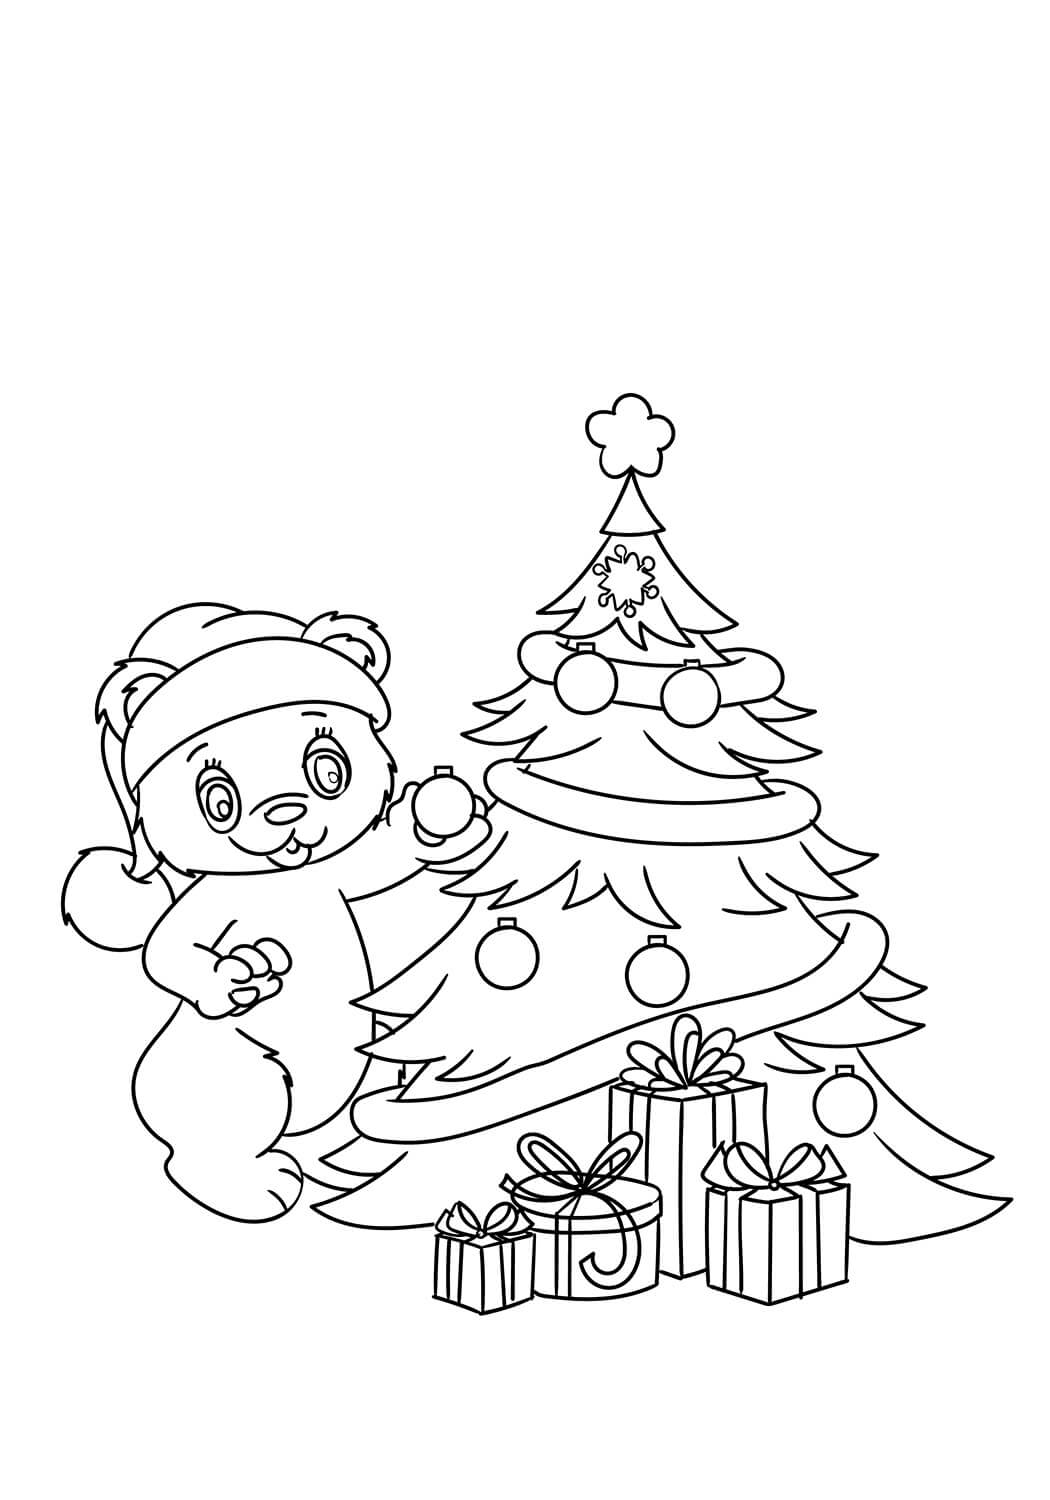 테디가 크리스마스 트리를 장식하고 있습니다 coloring page